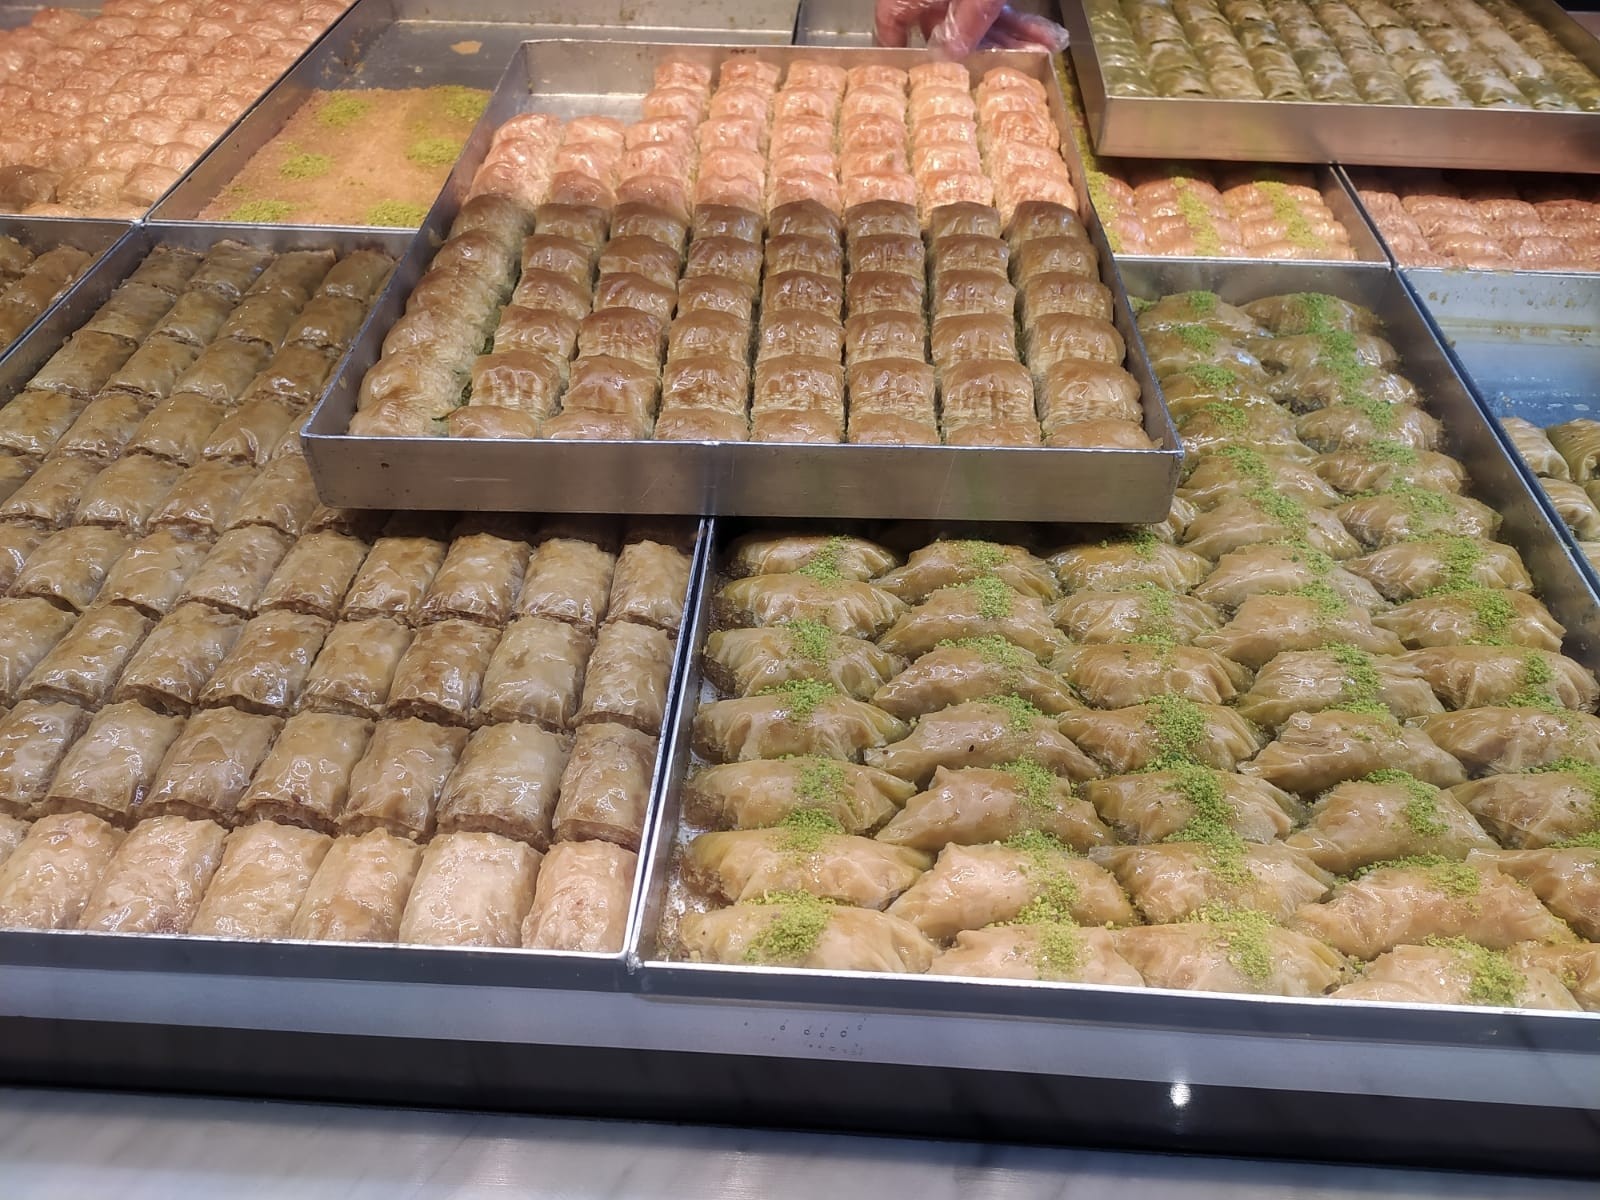 Ramazanda vatandaşların ’tatlı’ telaşı, satışlar dört katına çıktı